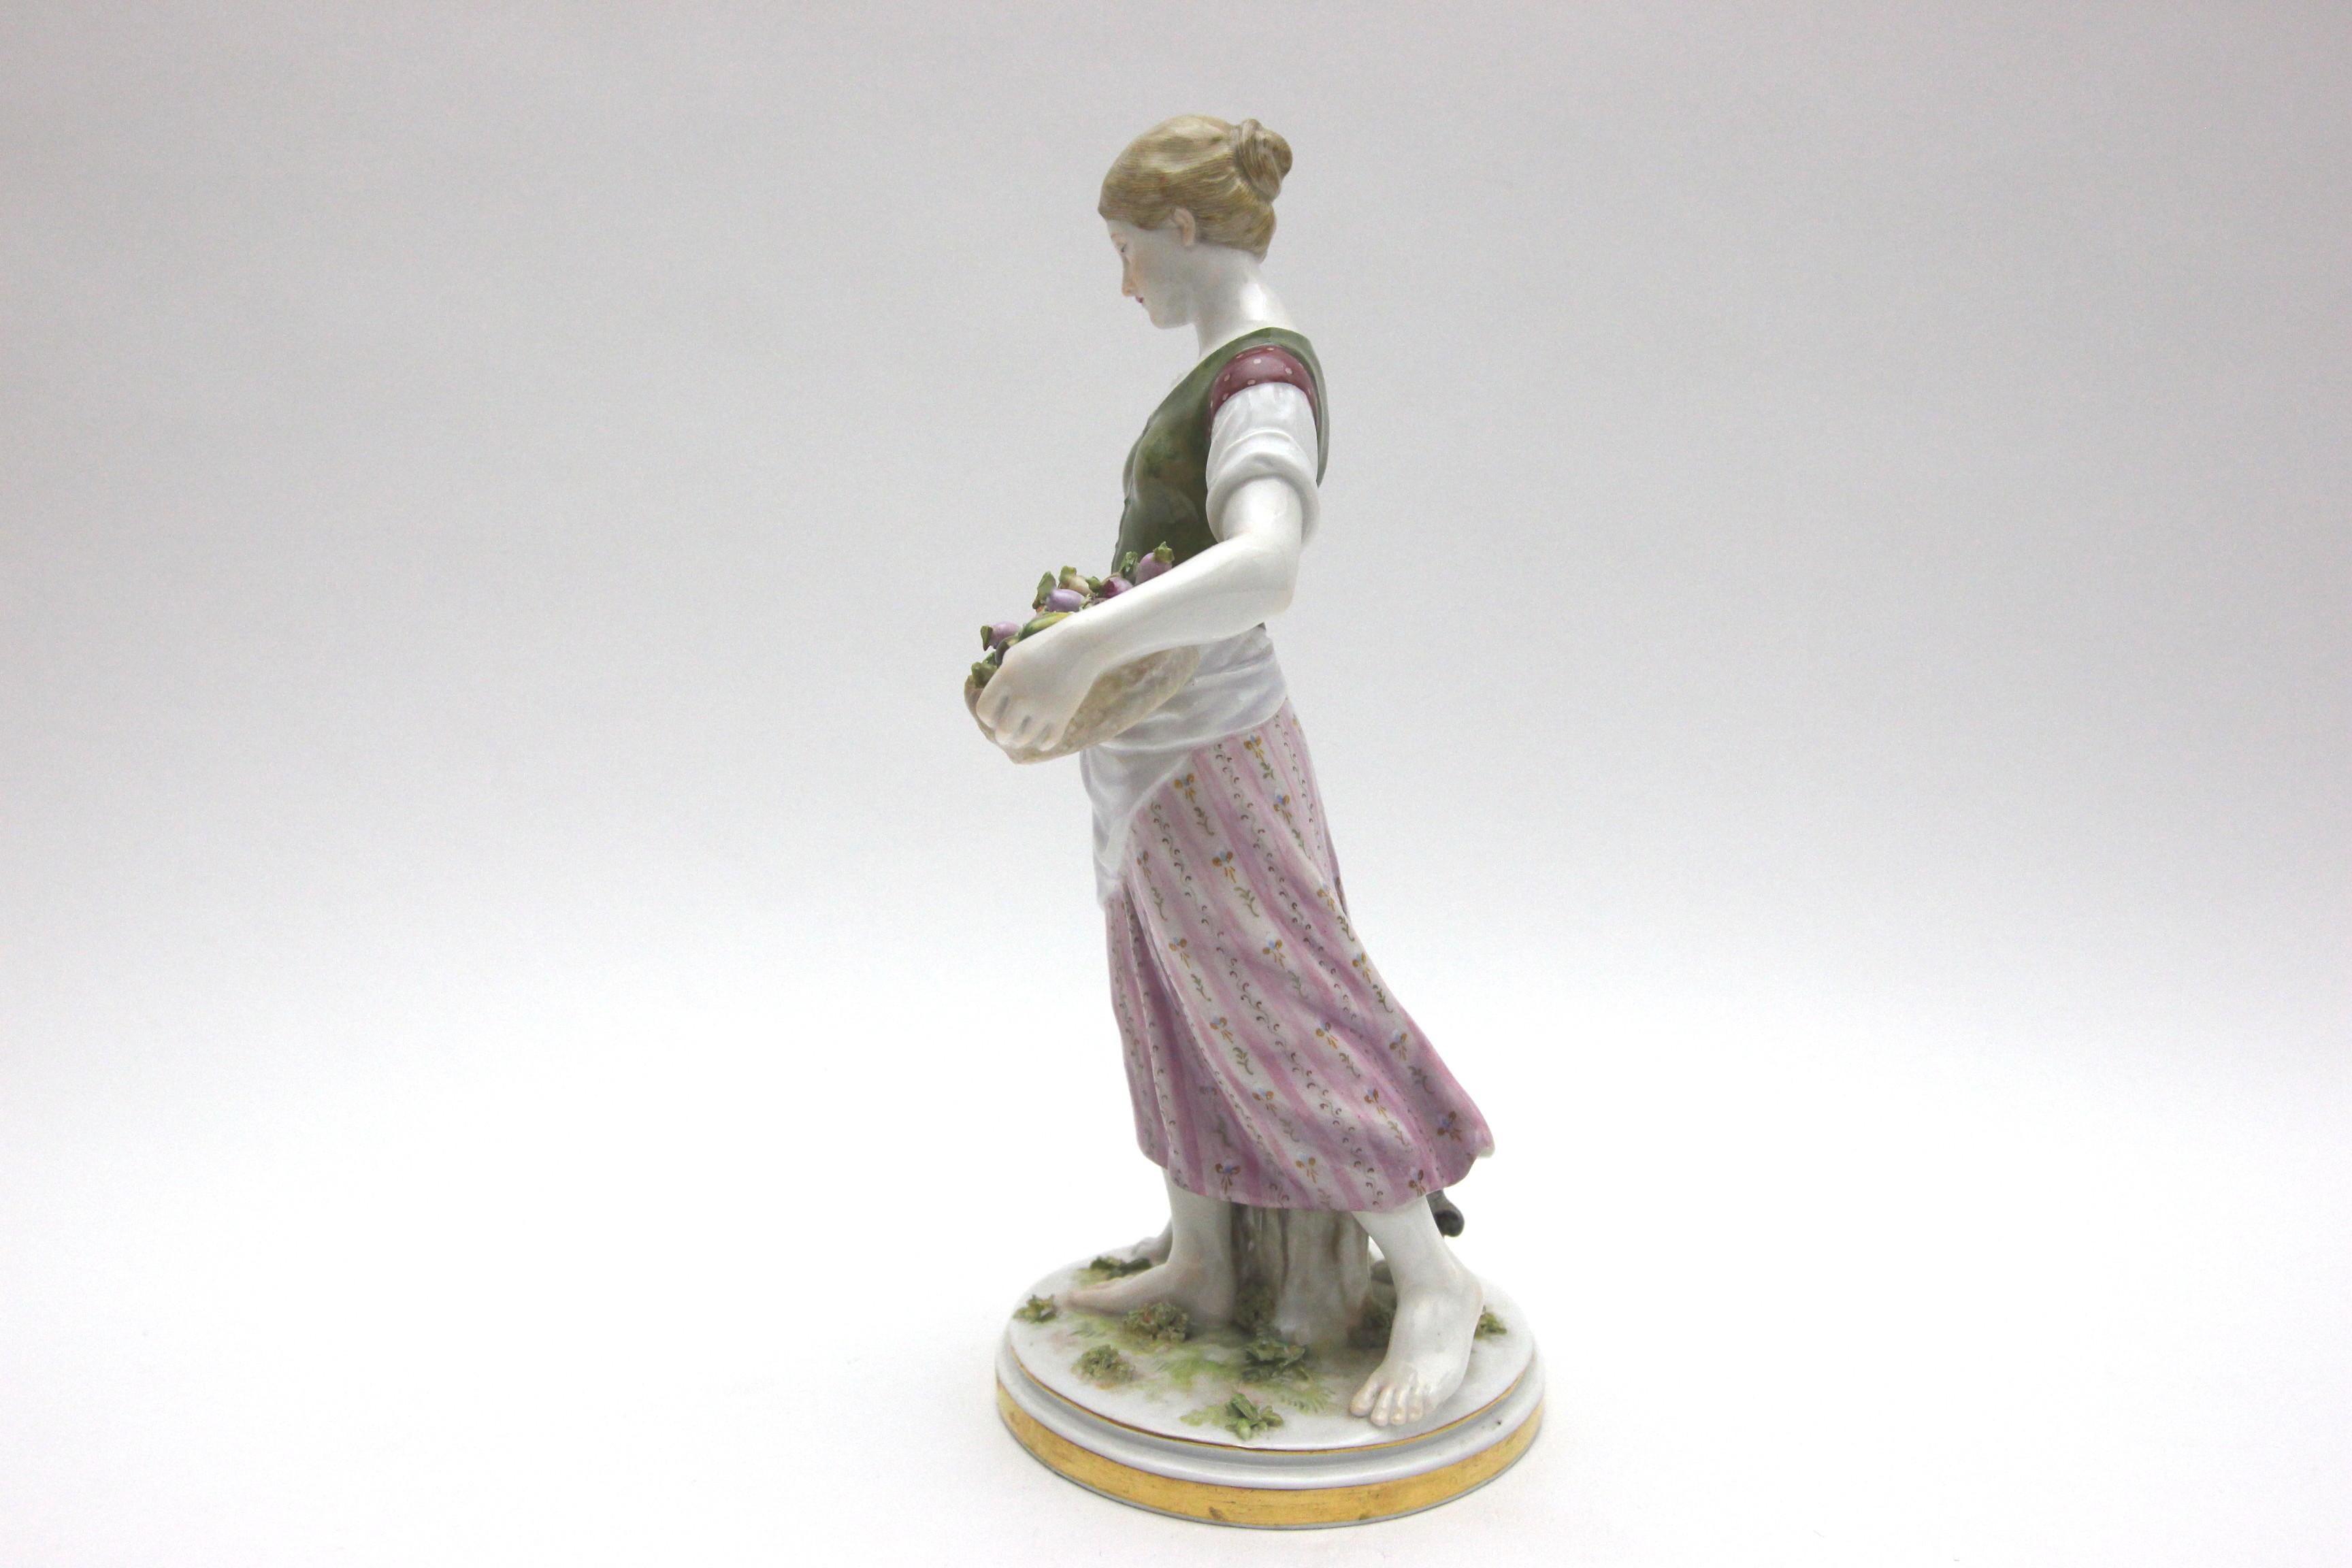 Rare Meissen Porcelain Art Nouveau Figure as a Girl with Dog (Art nouveau)